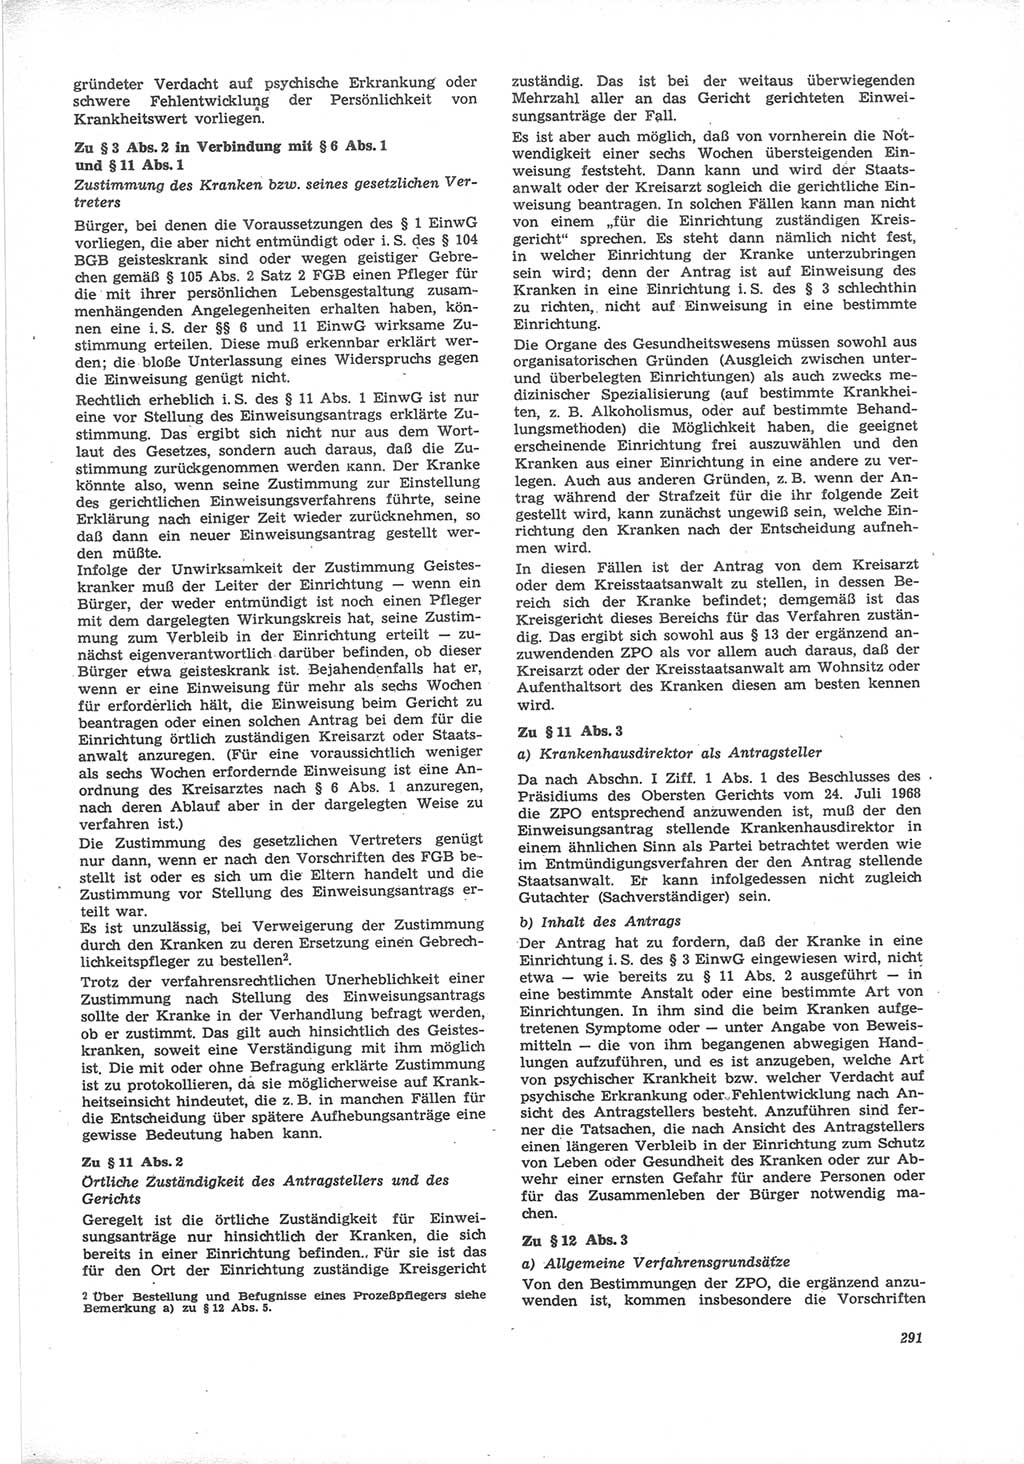 Neue Justiz (NJ), Zeitschrift für Recht und Rechtswissenschaft [Deutsche Demokratische Republik (DDR)], 24. Jahrgang 1970, Seite 291 (NJ DDR 1970, S. 291)